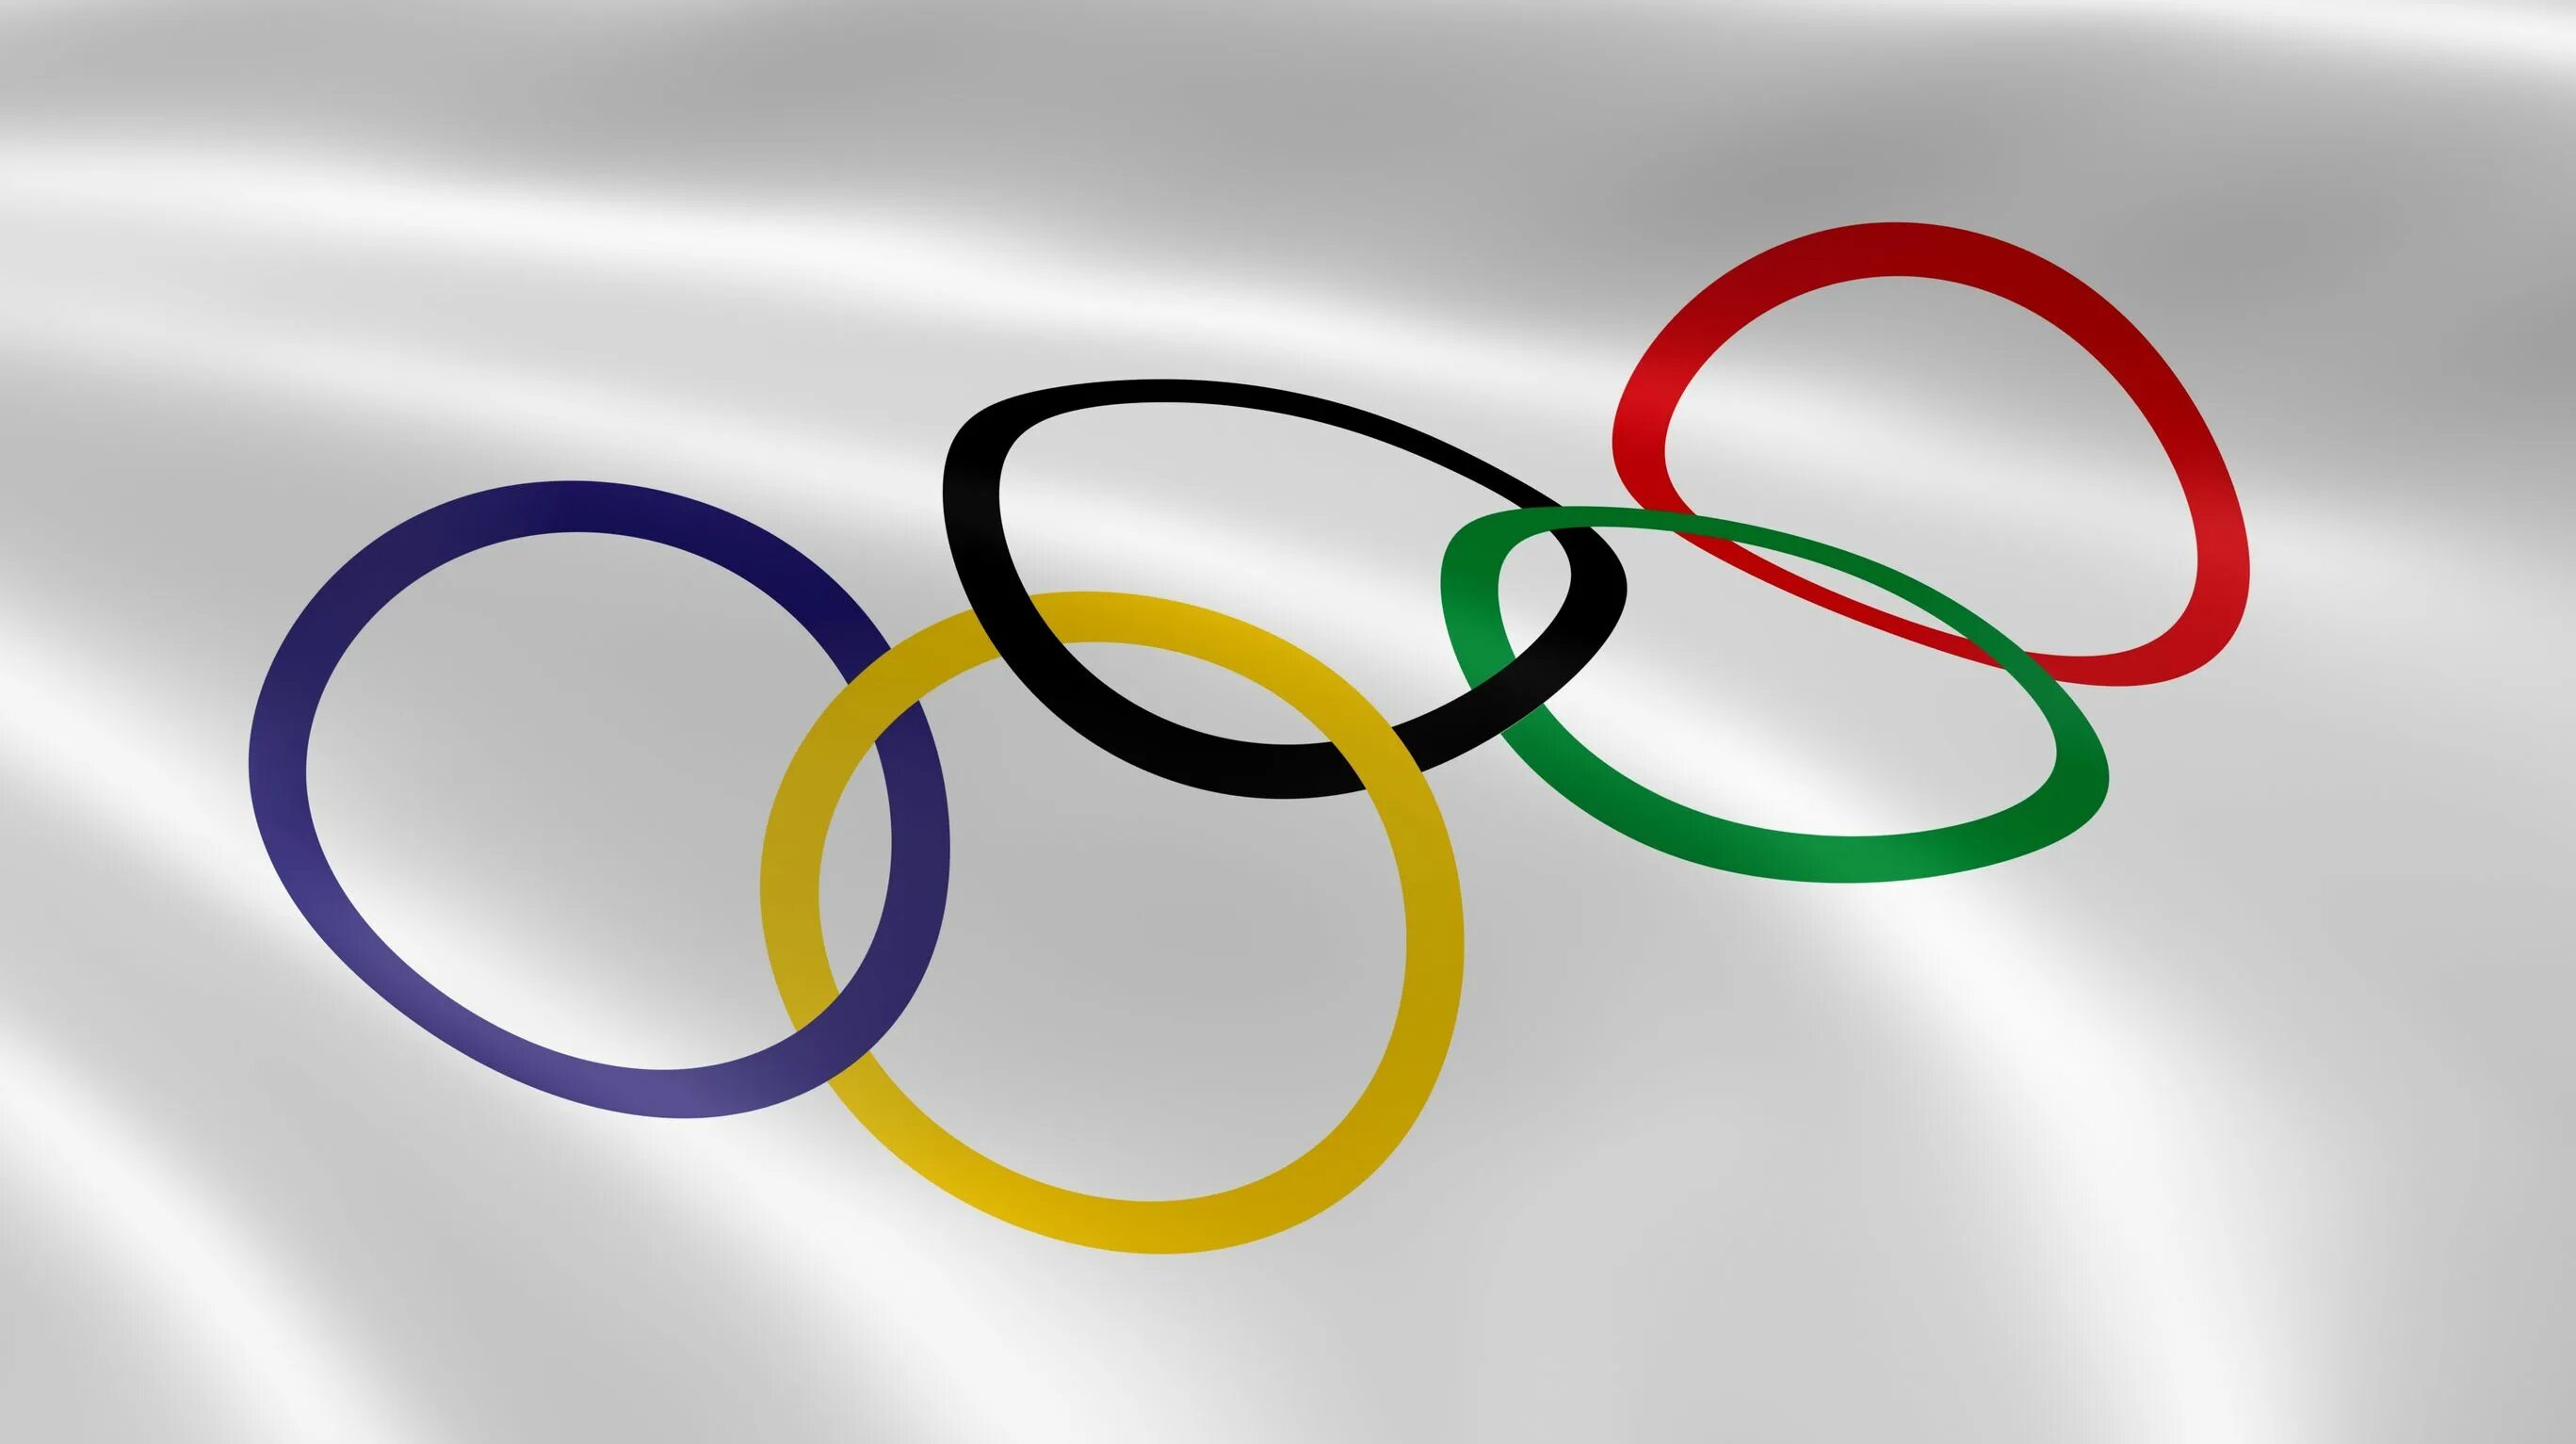 Олимпийские игры Олимпийский флаг. Кольца Олимпийских игр. Олимпийские кольца флаг.